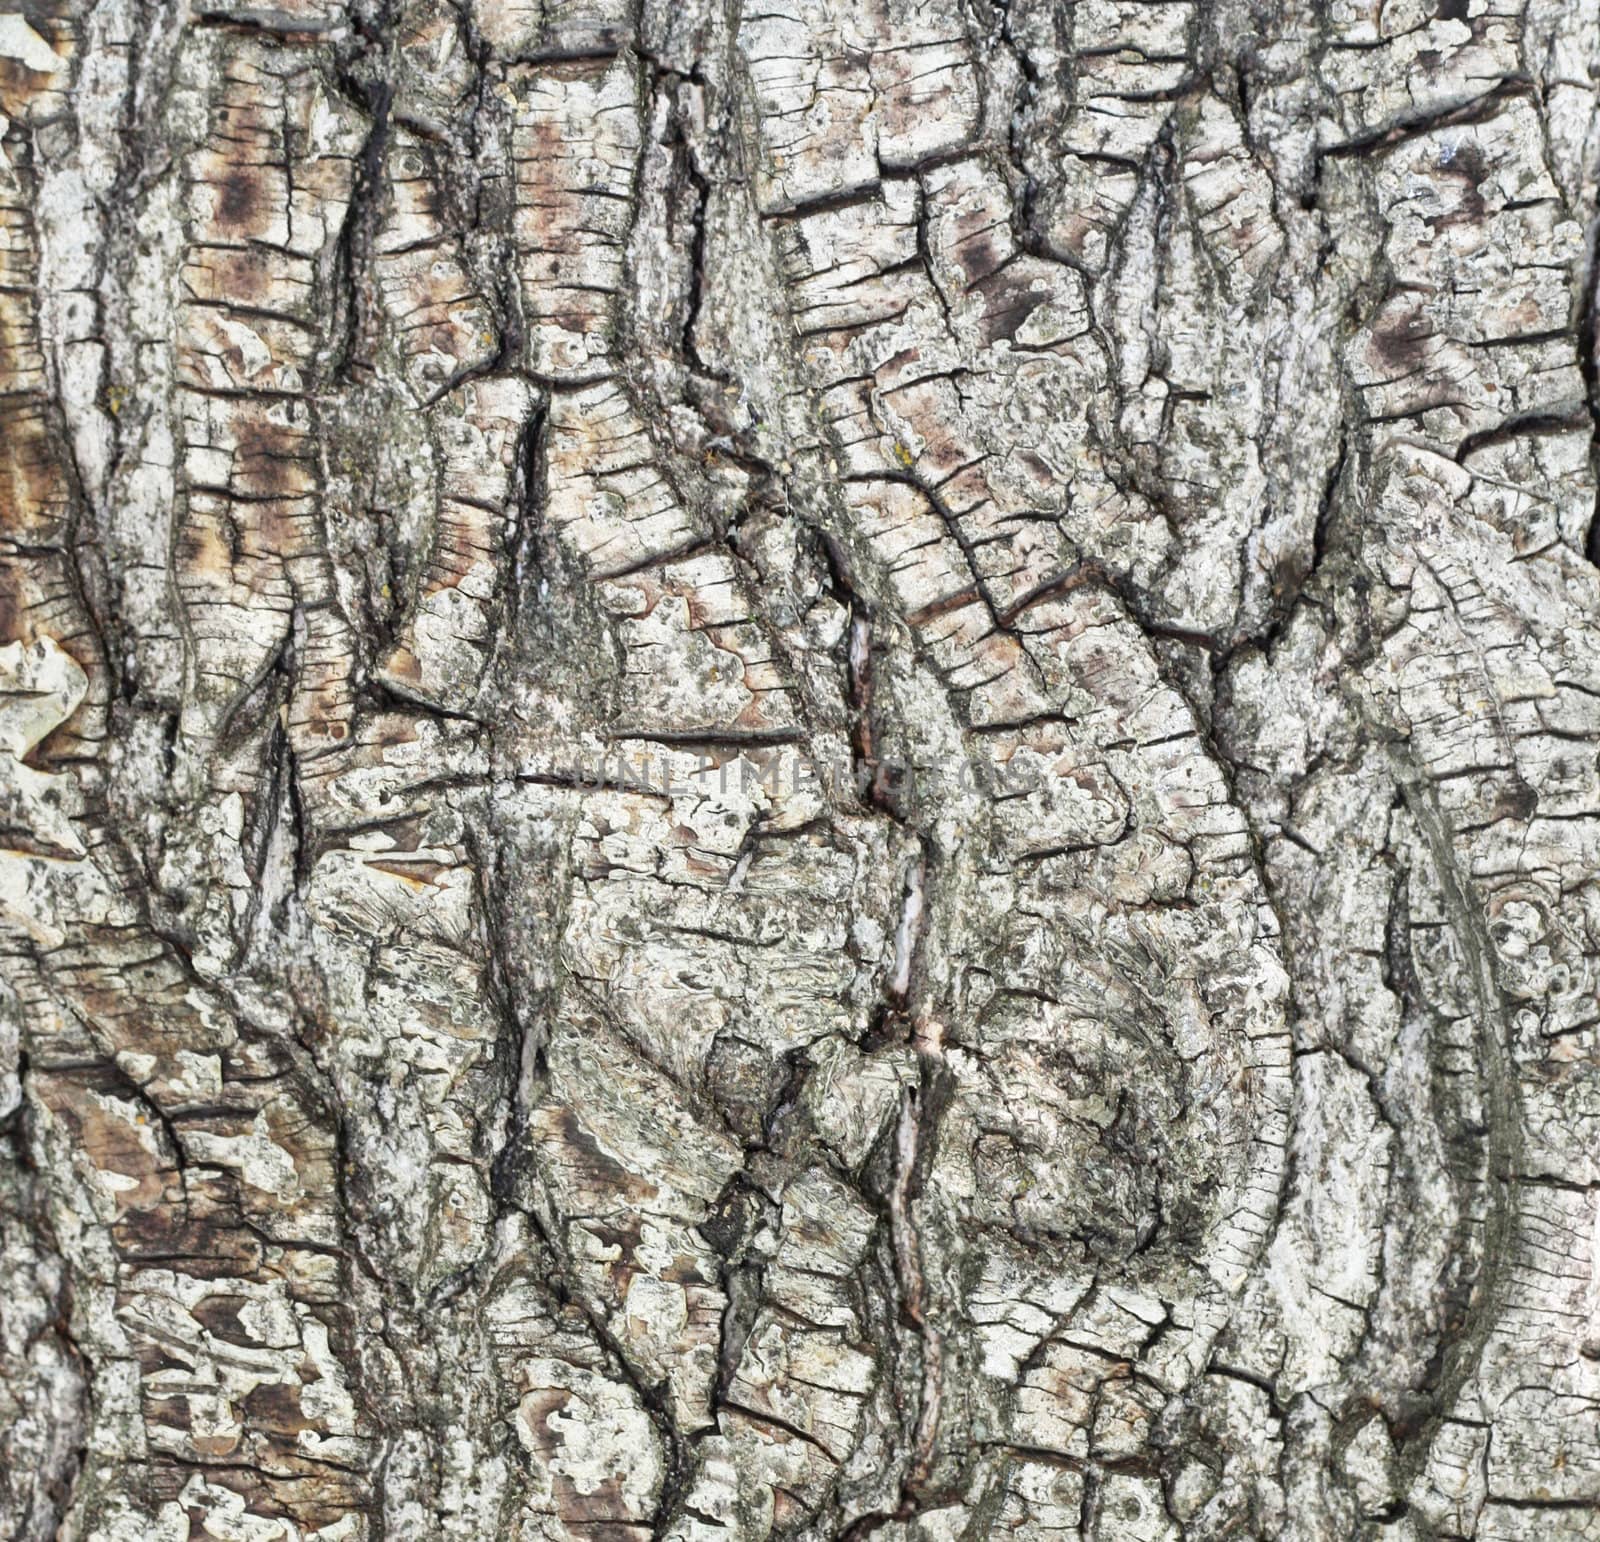 Bark of pine tree in forest by schankz